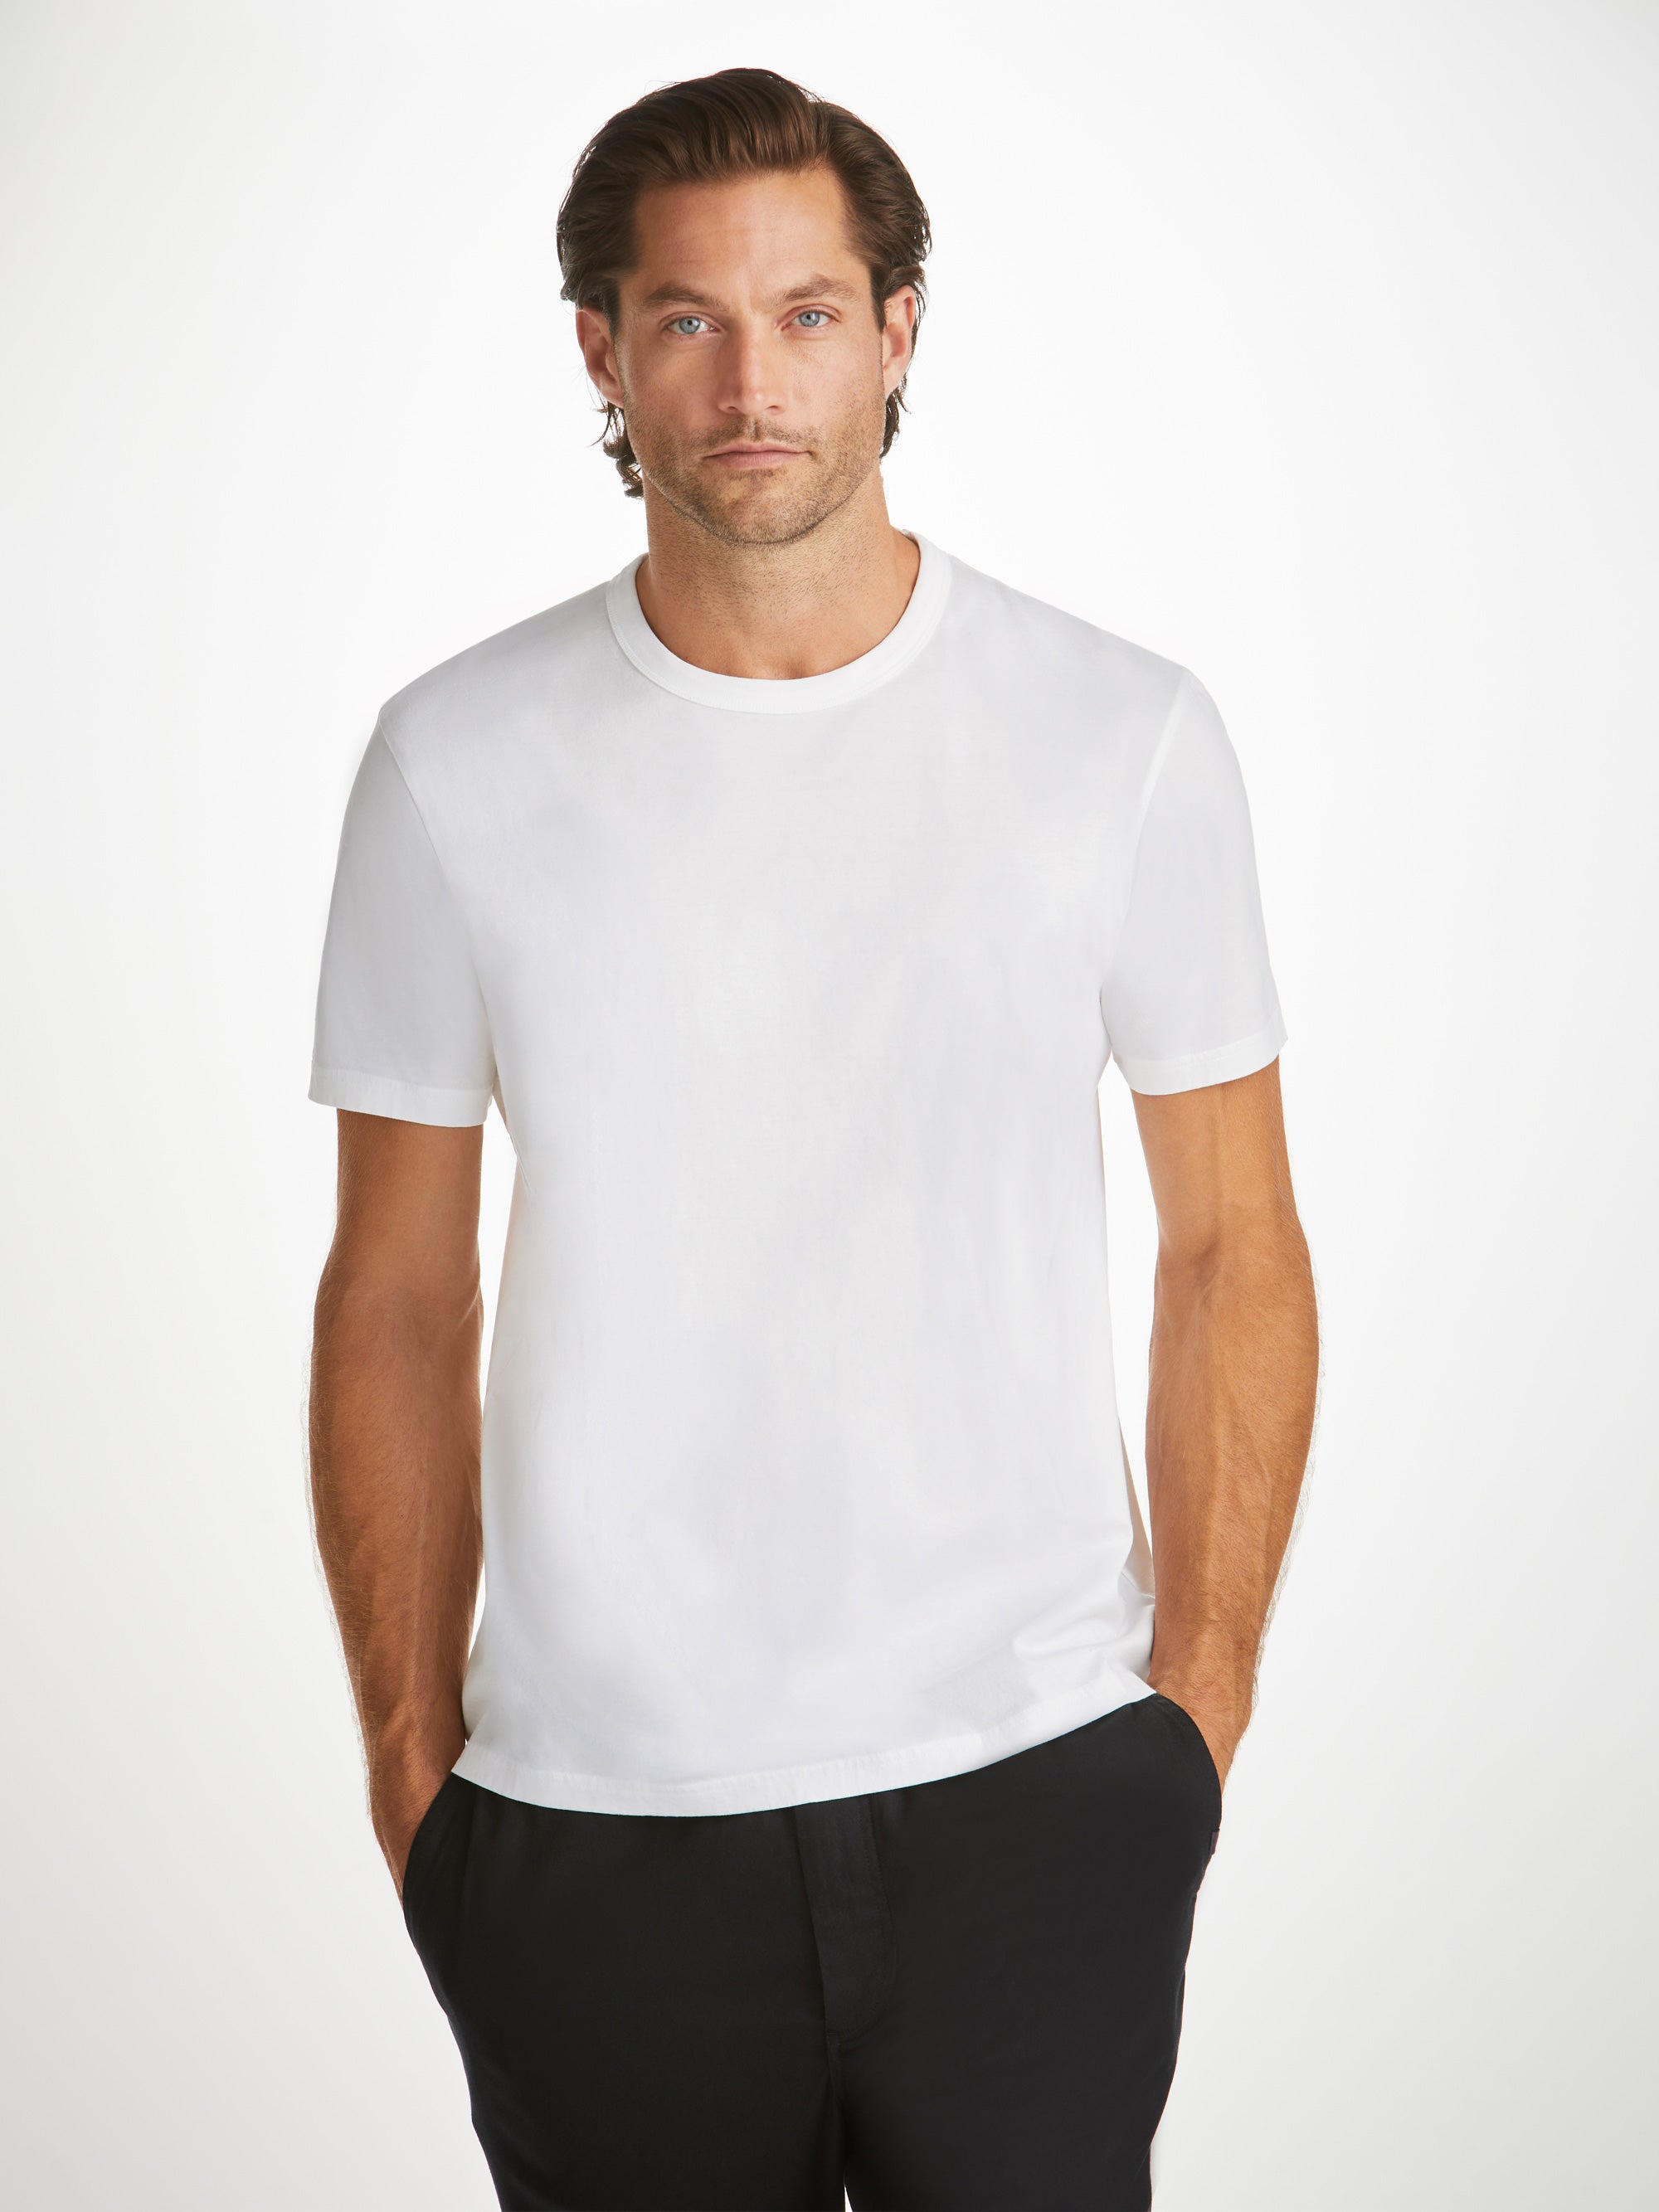 Shop Men's Pima Cotton T-Shirts